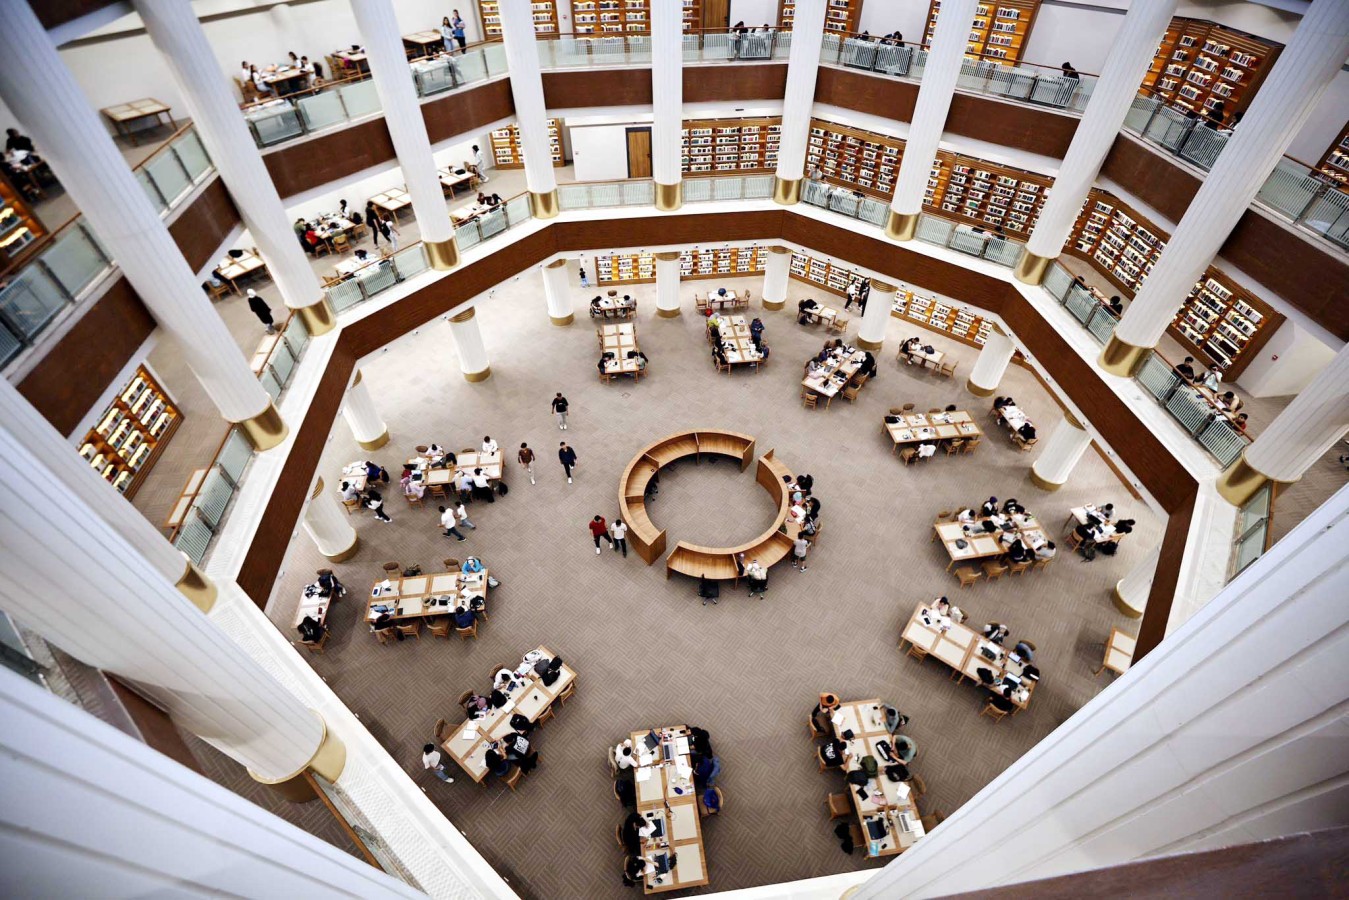 Şahinbey Belediyesi Millet Kütüphanesi’ne vatandaşlardan yoğun ilgi